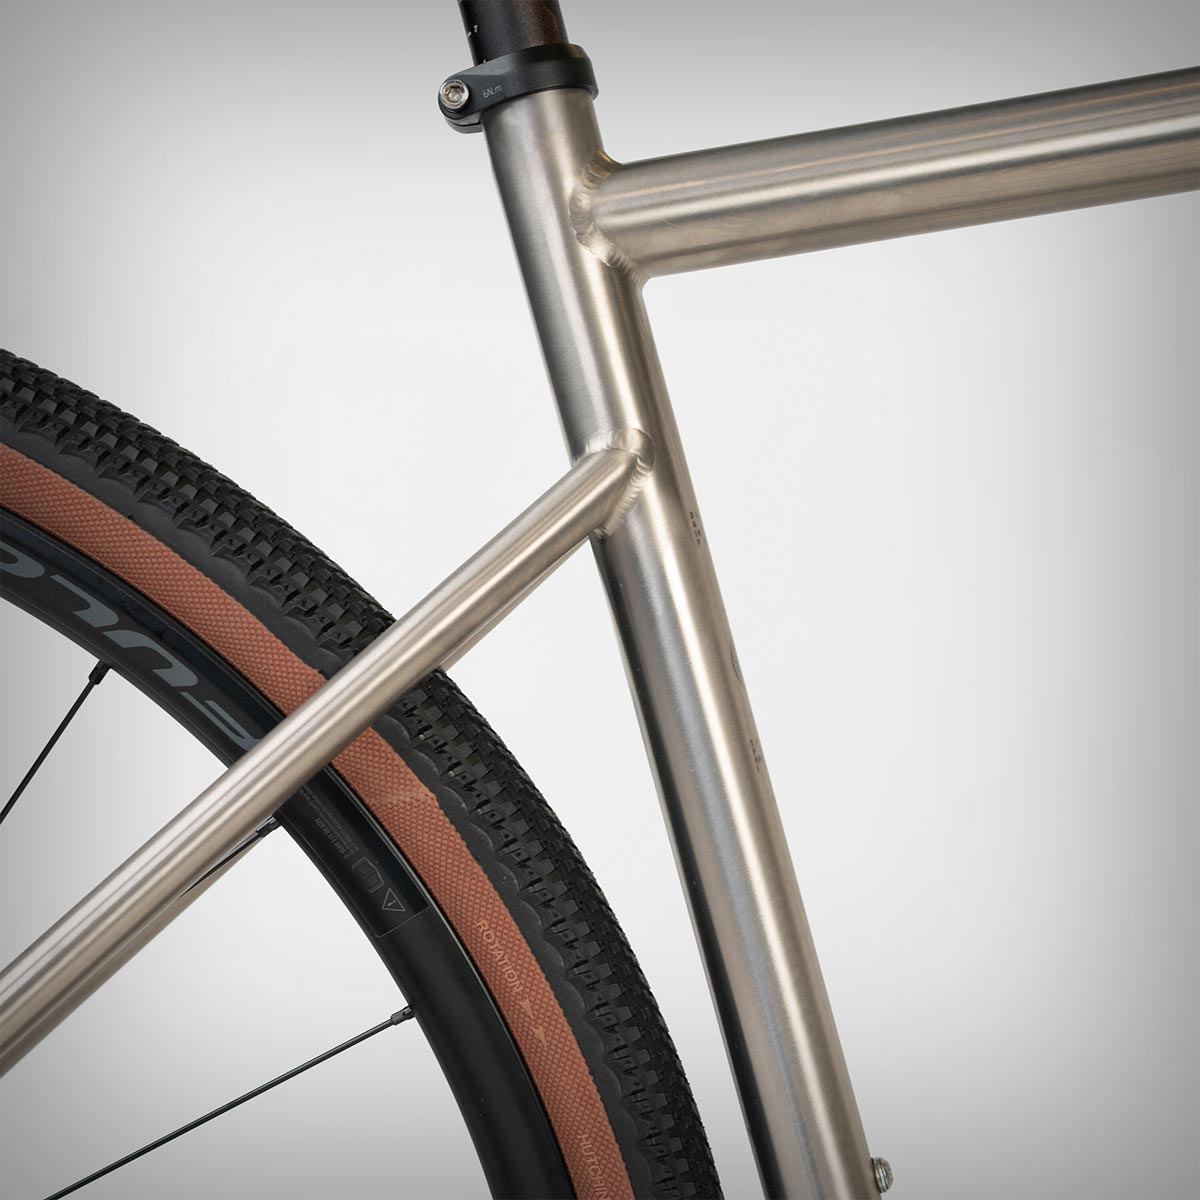 Triban GRVL 900 TI, una bicicleta de gravel con cuadro de titanio y la geometría más cómoda